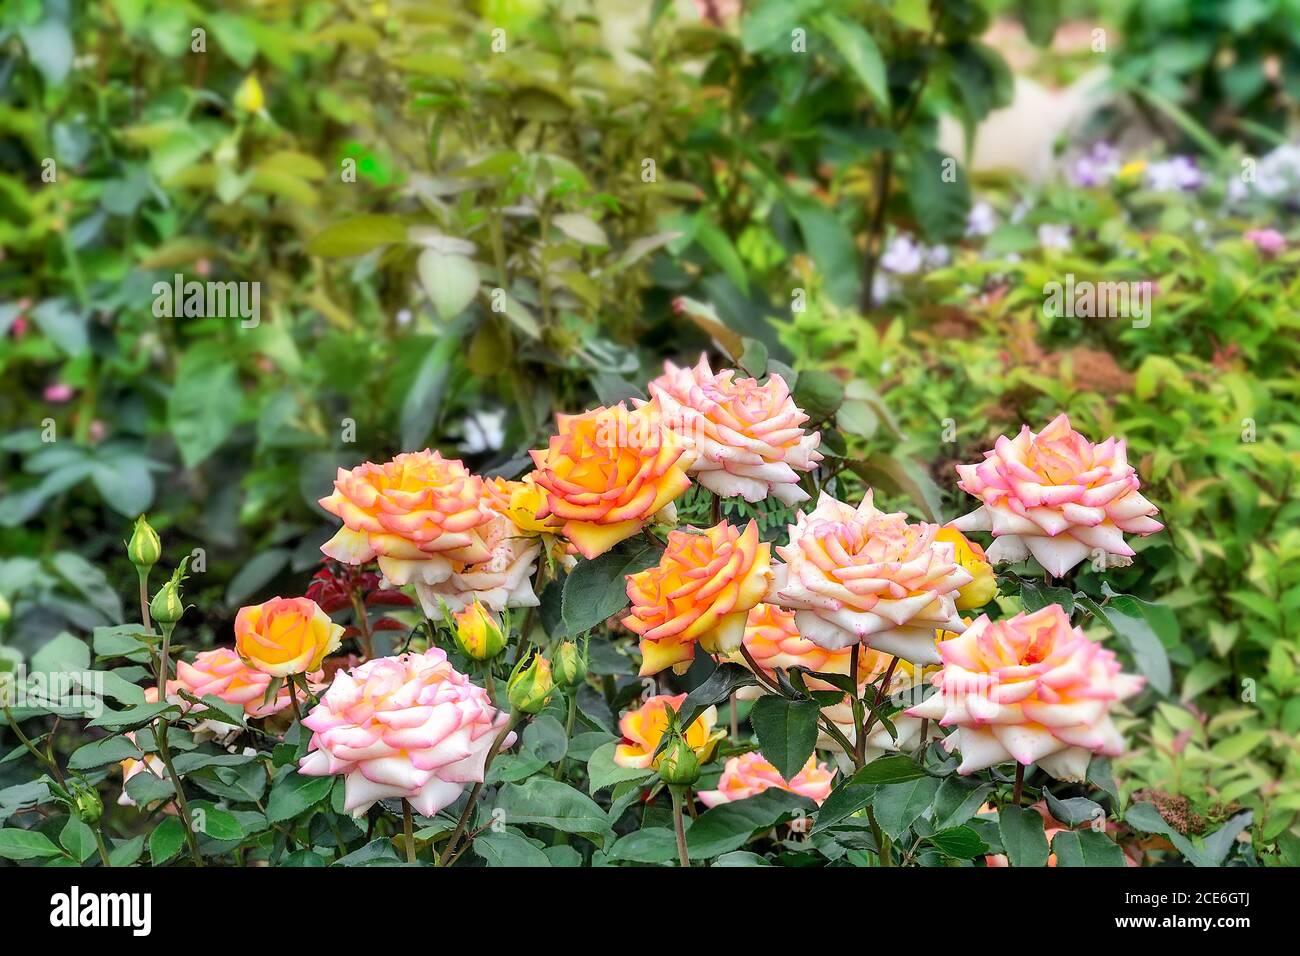 Wunderschöne rosa-gelbe Rosenblüten auf verschwommenem Hintergrund des Sommergartens. Leerzeichen für Text. Blumenzucht, Gartenbau, Anbau von Blumen oder Landschaftsbau Stockfoto